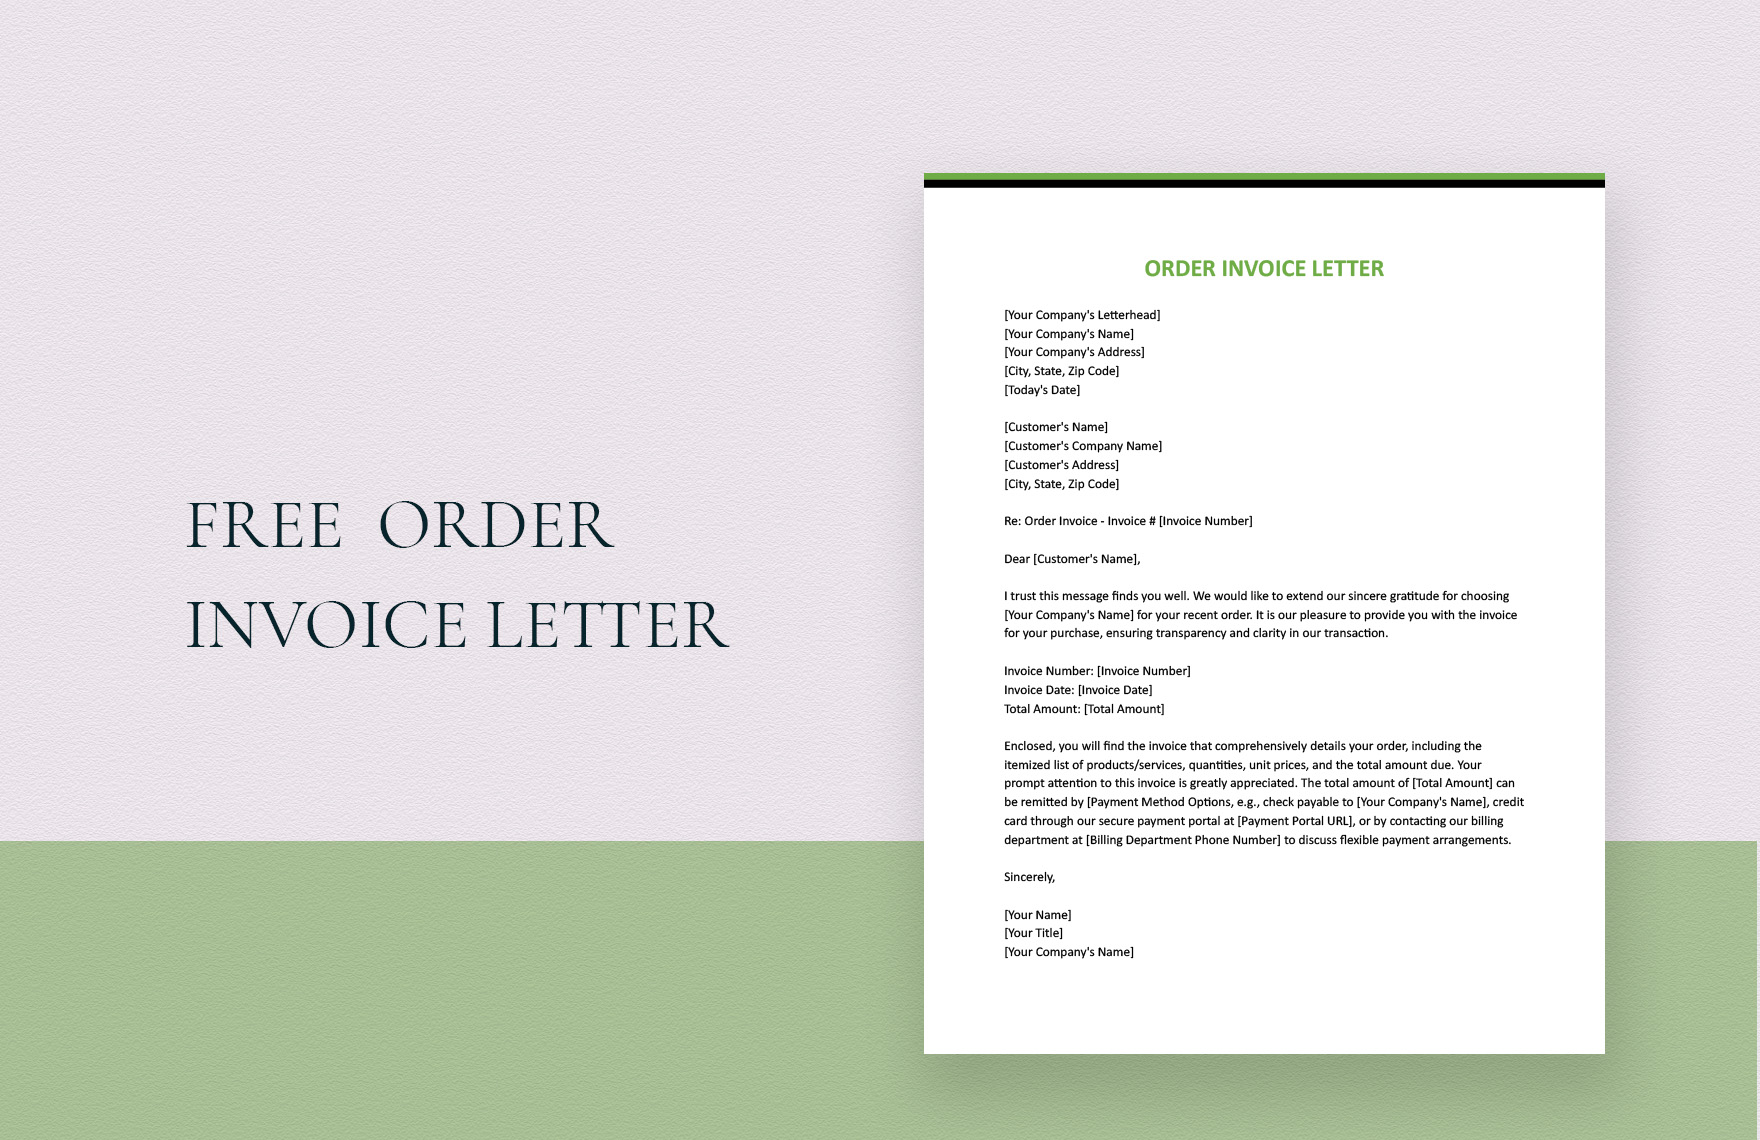 Order Invoice Letter